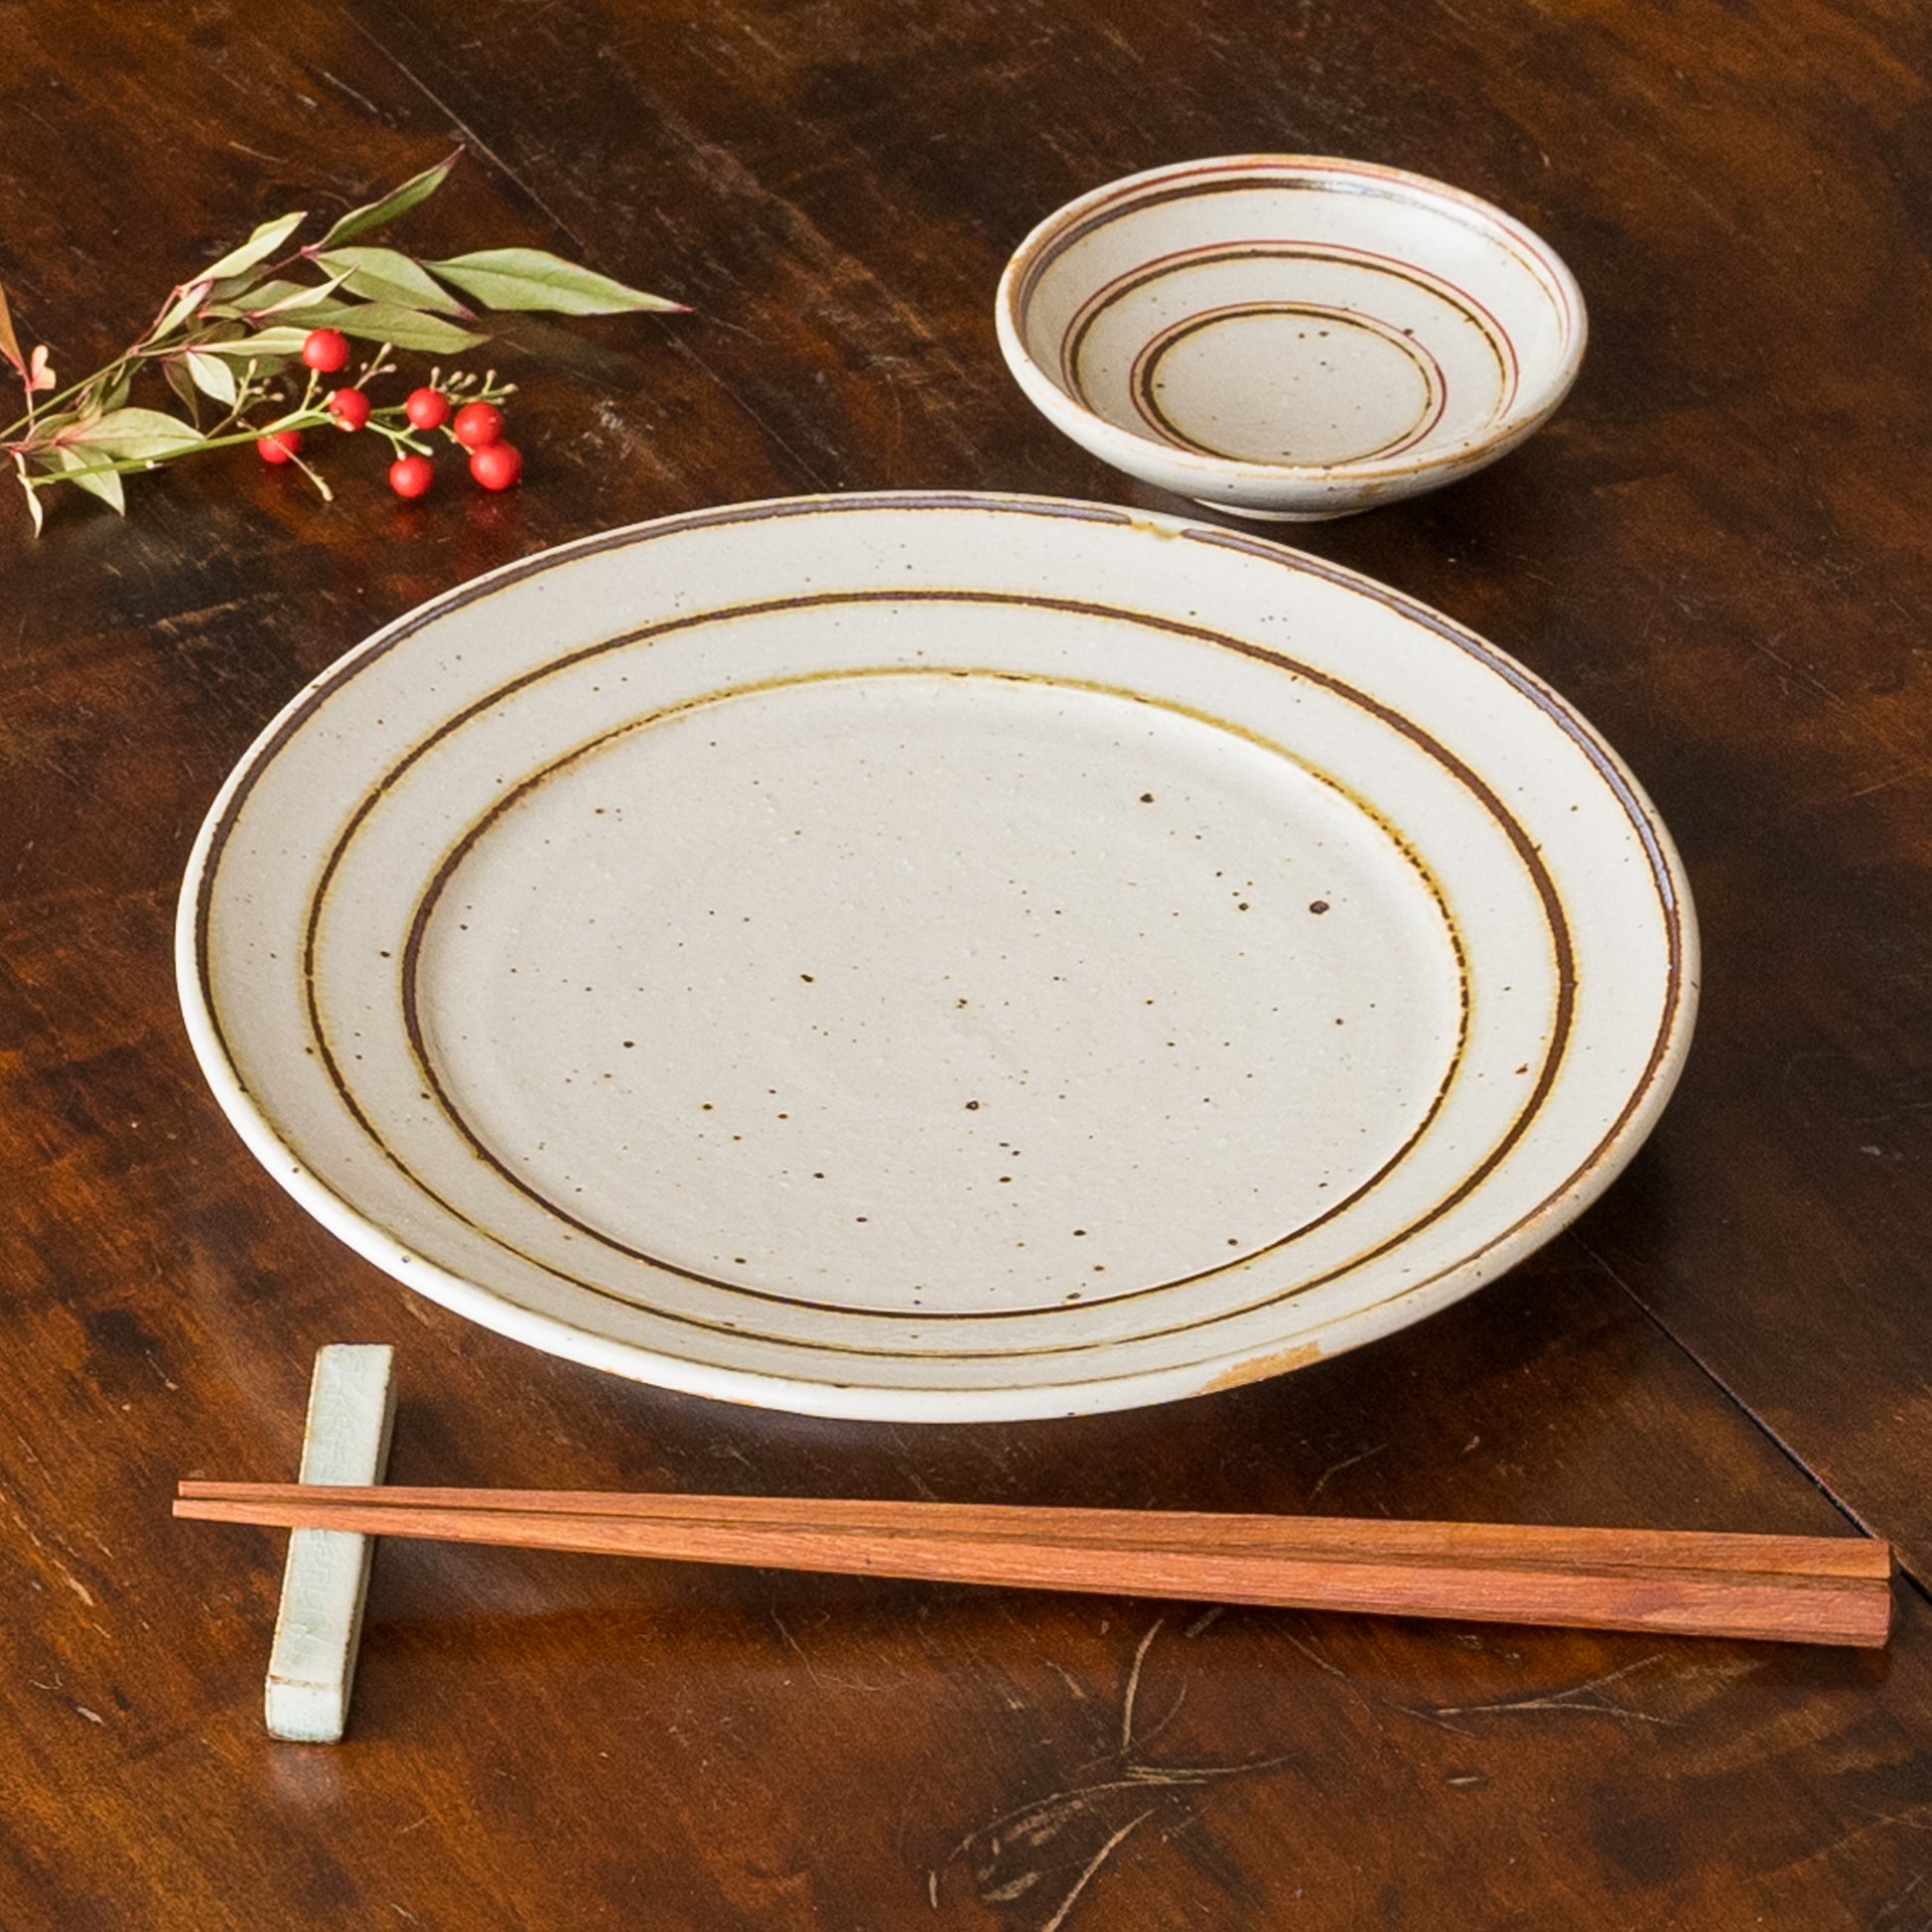 食卓を素敵に彩ってくれる冨本大輔さんの灰釉鉄絵7寸リム皿と3寸皿